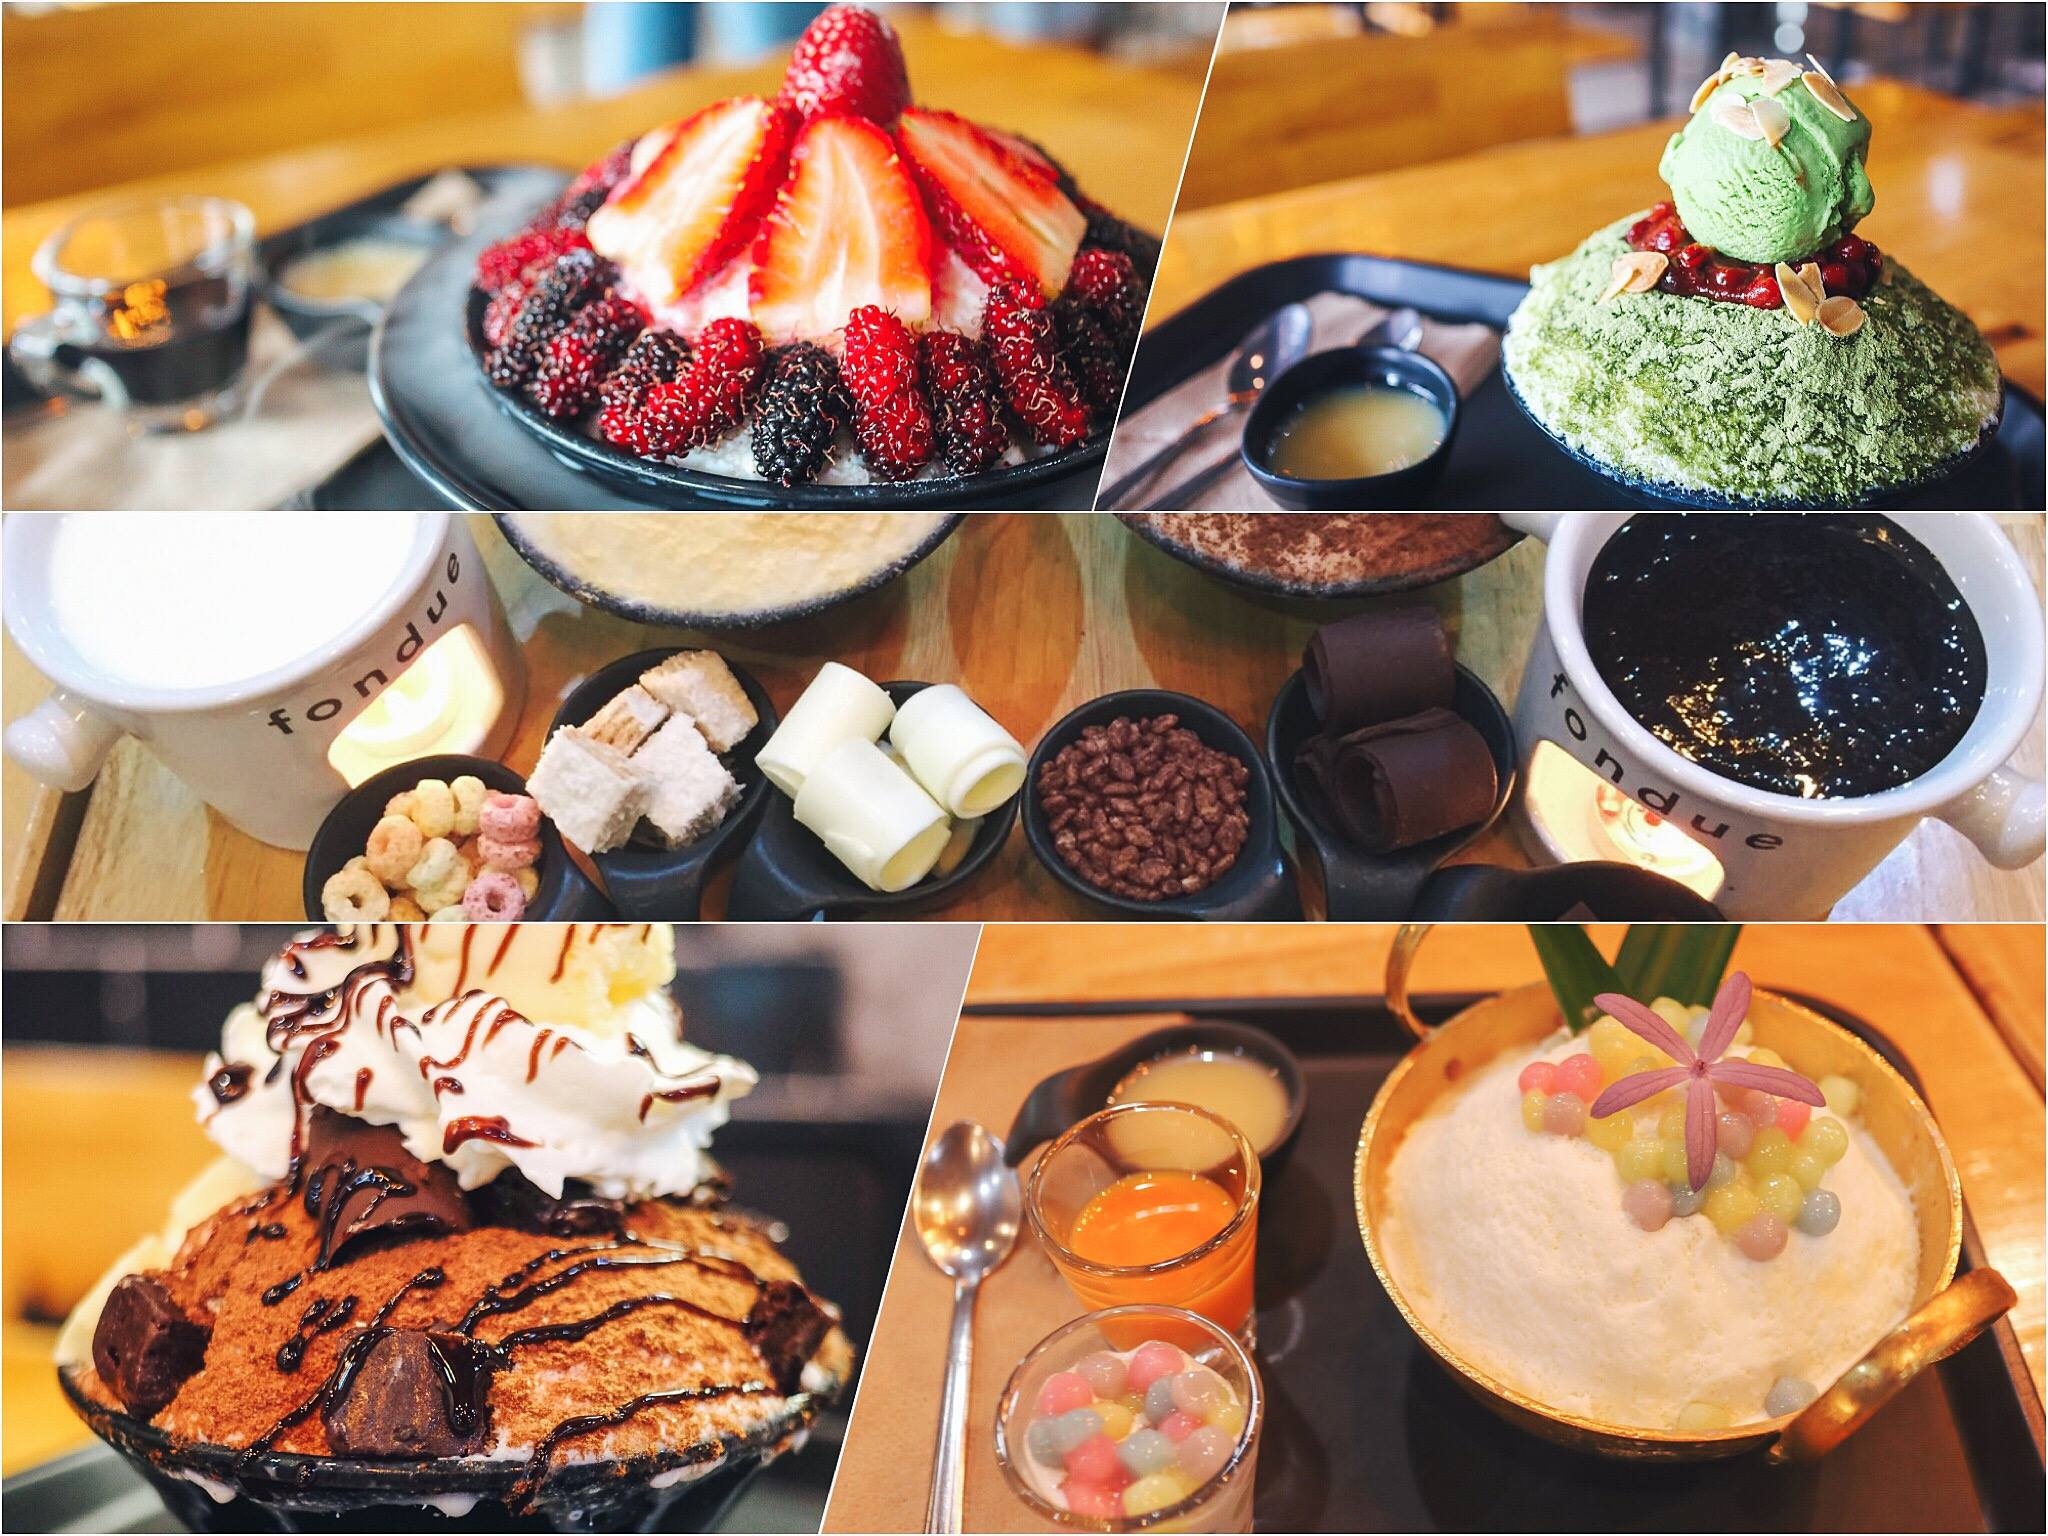  7.-Seoul-House-Dessert-Cafe-จัดได้ว่าจุดเช็คอินนี้ห้ามพลาดจริงๆสำหรับเรื่องของหวานบิงซูไอศครีม-ที่เรียกได้ว่าเมนูมีให้เลือกเยอะจนเลือกแทบจะไม่ได้-555-เรื่องบรรยากาศร้านสบายครับ-รสชาติอร่อยแน่นอนอยู่แล้วครับแอดมินกินมาหลายปีแล้ว-555
Seoul-House:-dessert-cafe?-craftbeer-นครศรีฯ
 ร้านดับร้อน,ร้านหน้าร้อน,ของกิน,เครื่องดื่ม,คาเฟ่,นครศรีธรรมราช